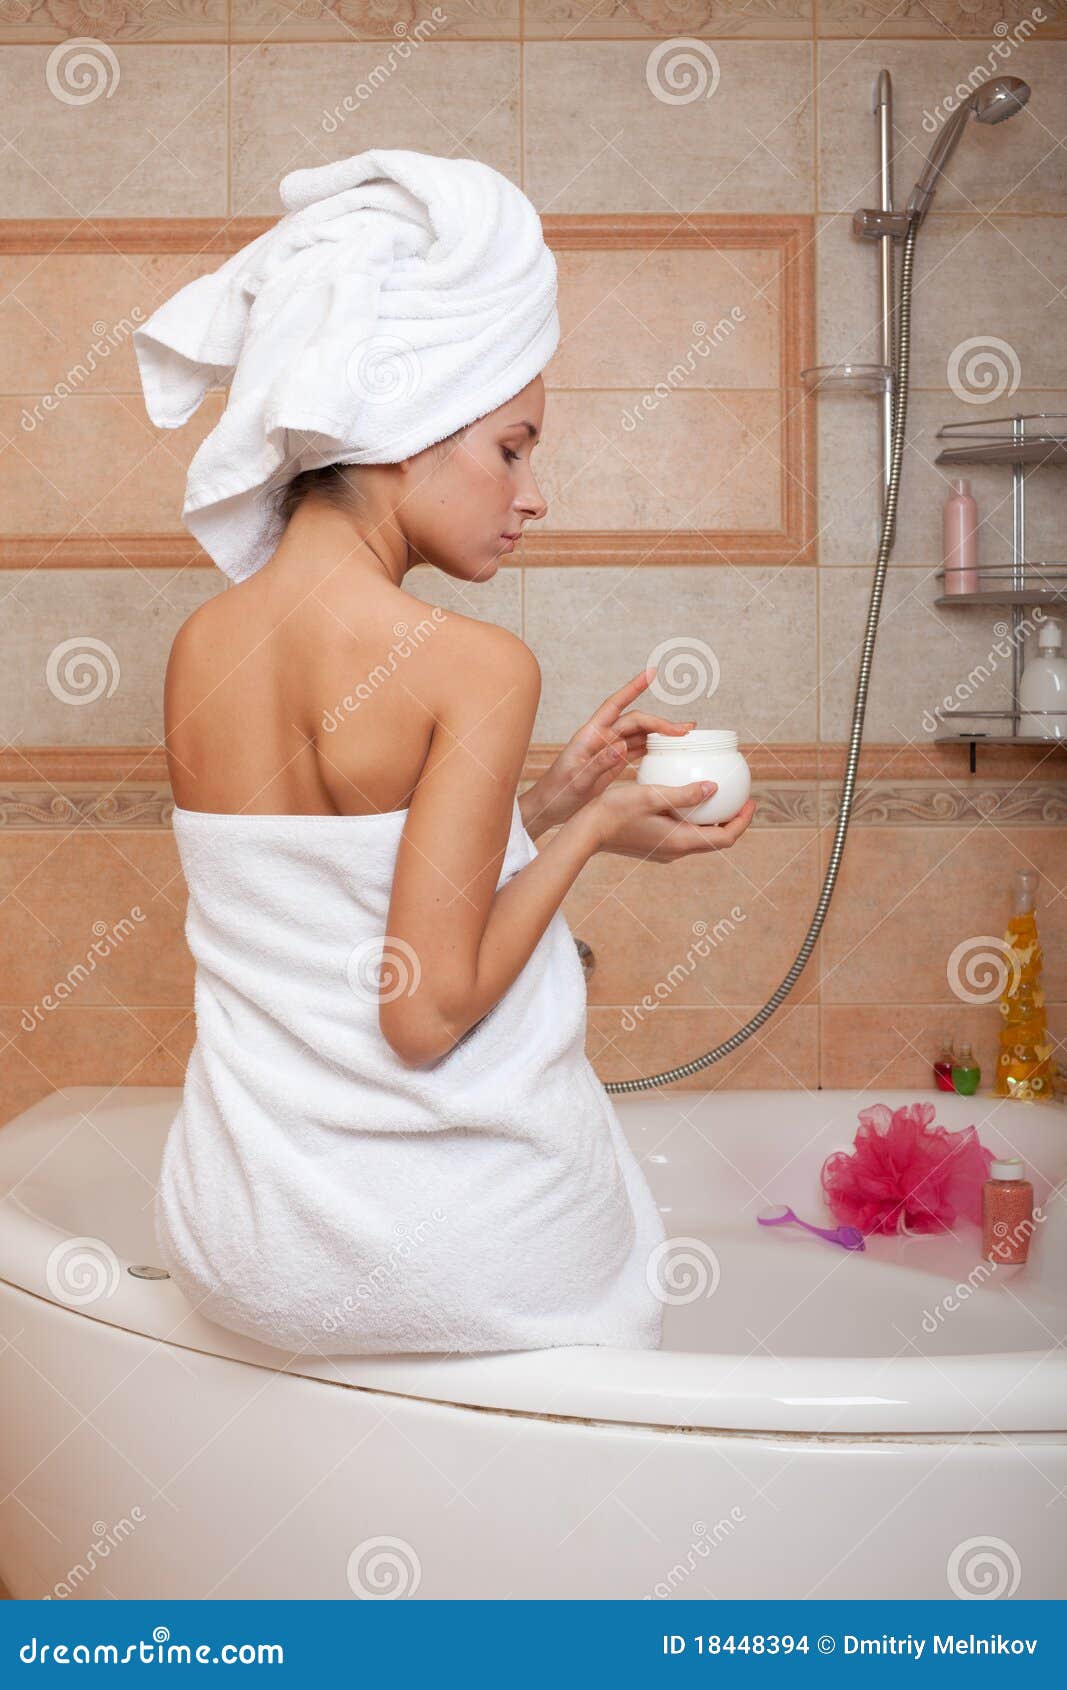 Ходит в полотенце. Девушка в полотенце в ванной. Фотосессия в ванной с полотенцем. Девушка в полотенце в ванной фотосток. Женщины в ванной с кремом.